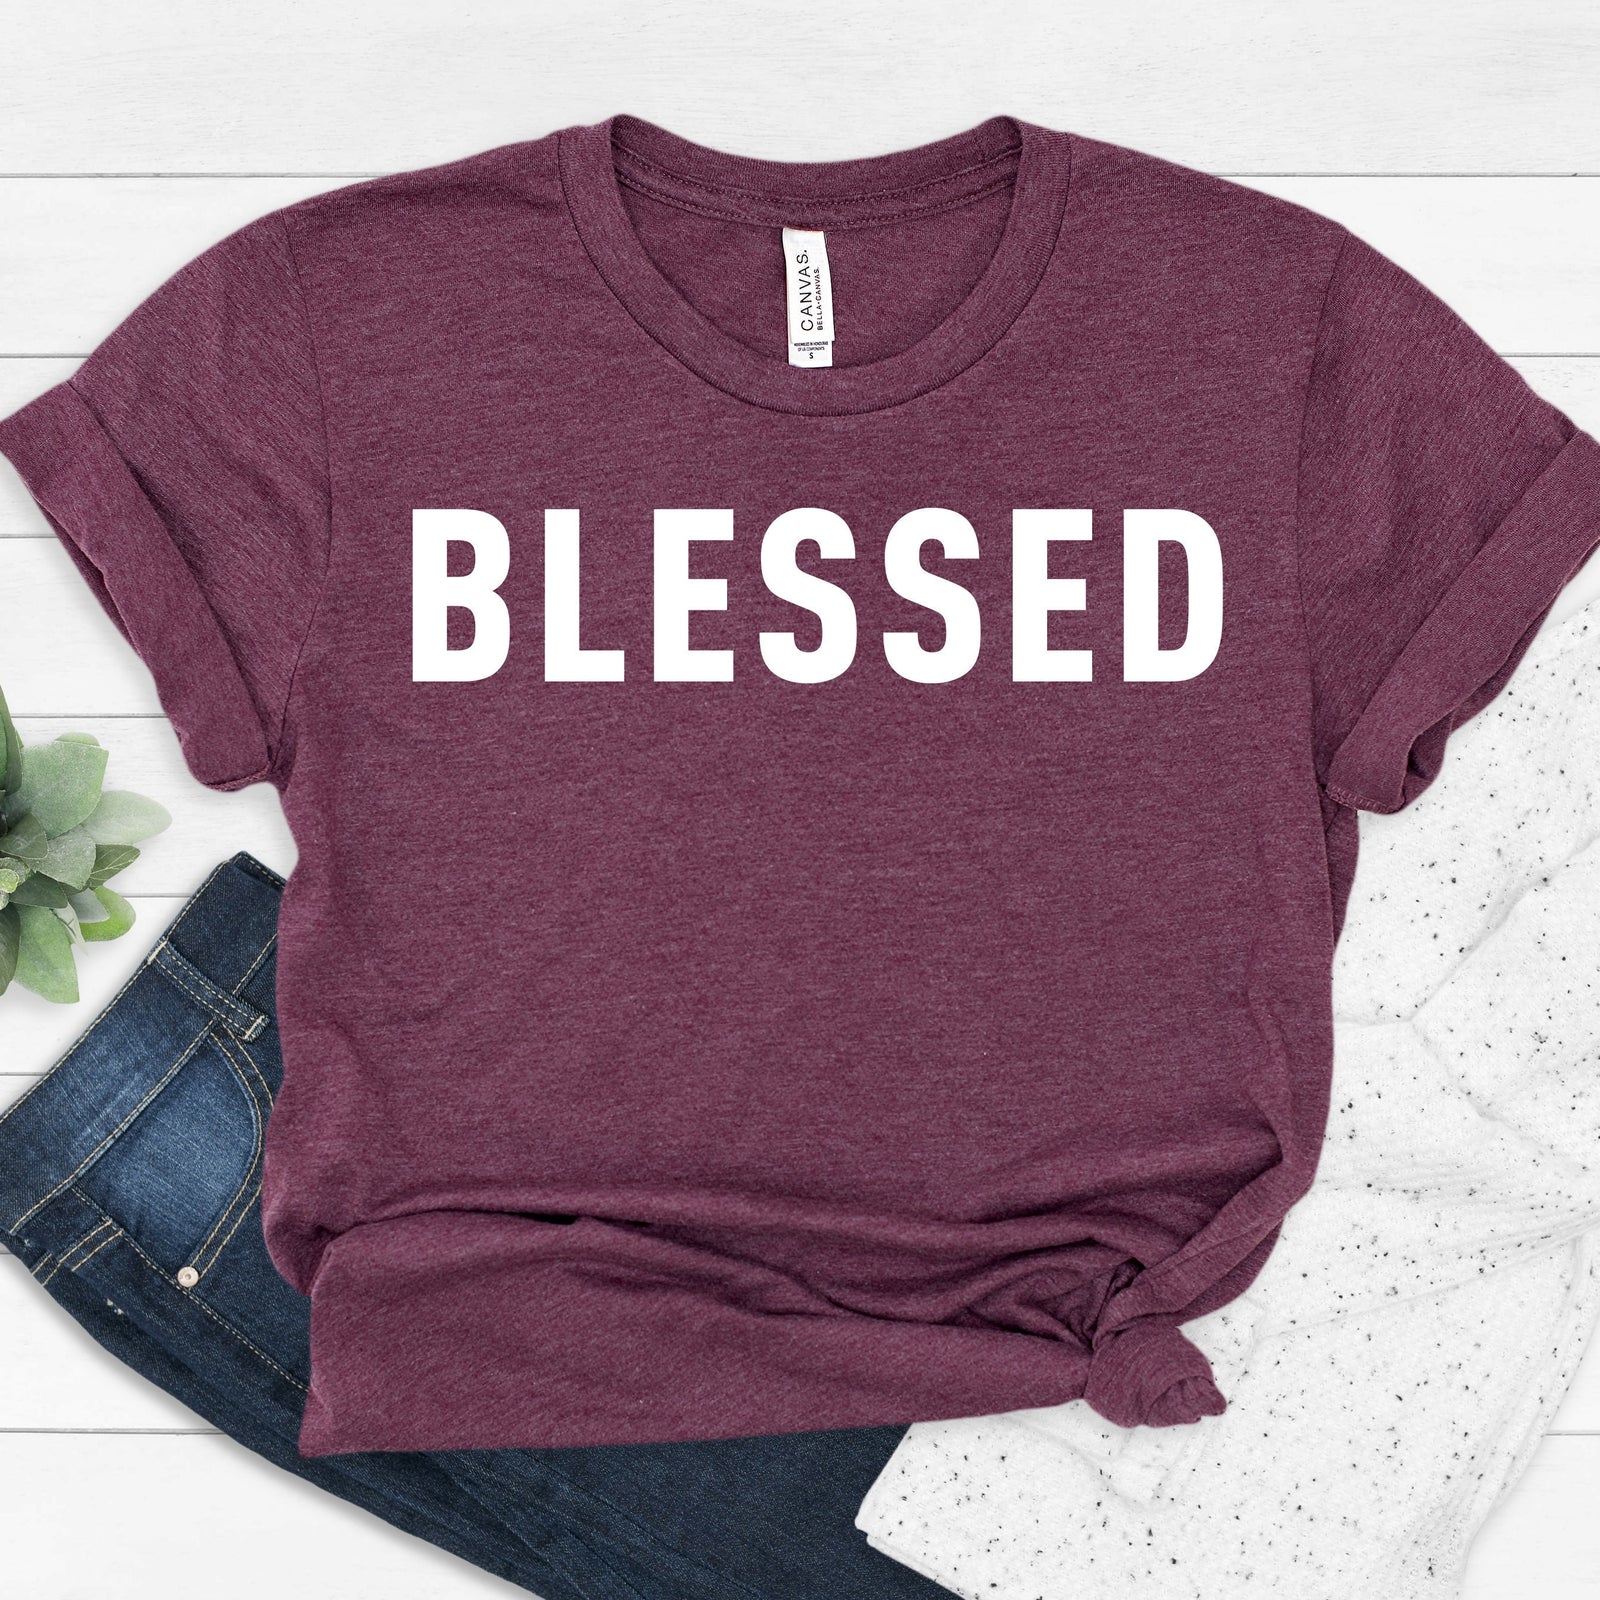 Blessed T Shirt - Custom Blessed Tshirt - Personalized Blessed Shirt - Blessed Shirt Gift - Blessed Couple Shirt - Blessed family Shirt